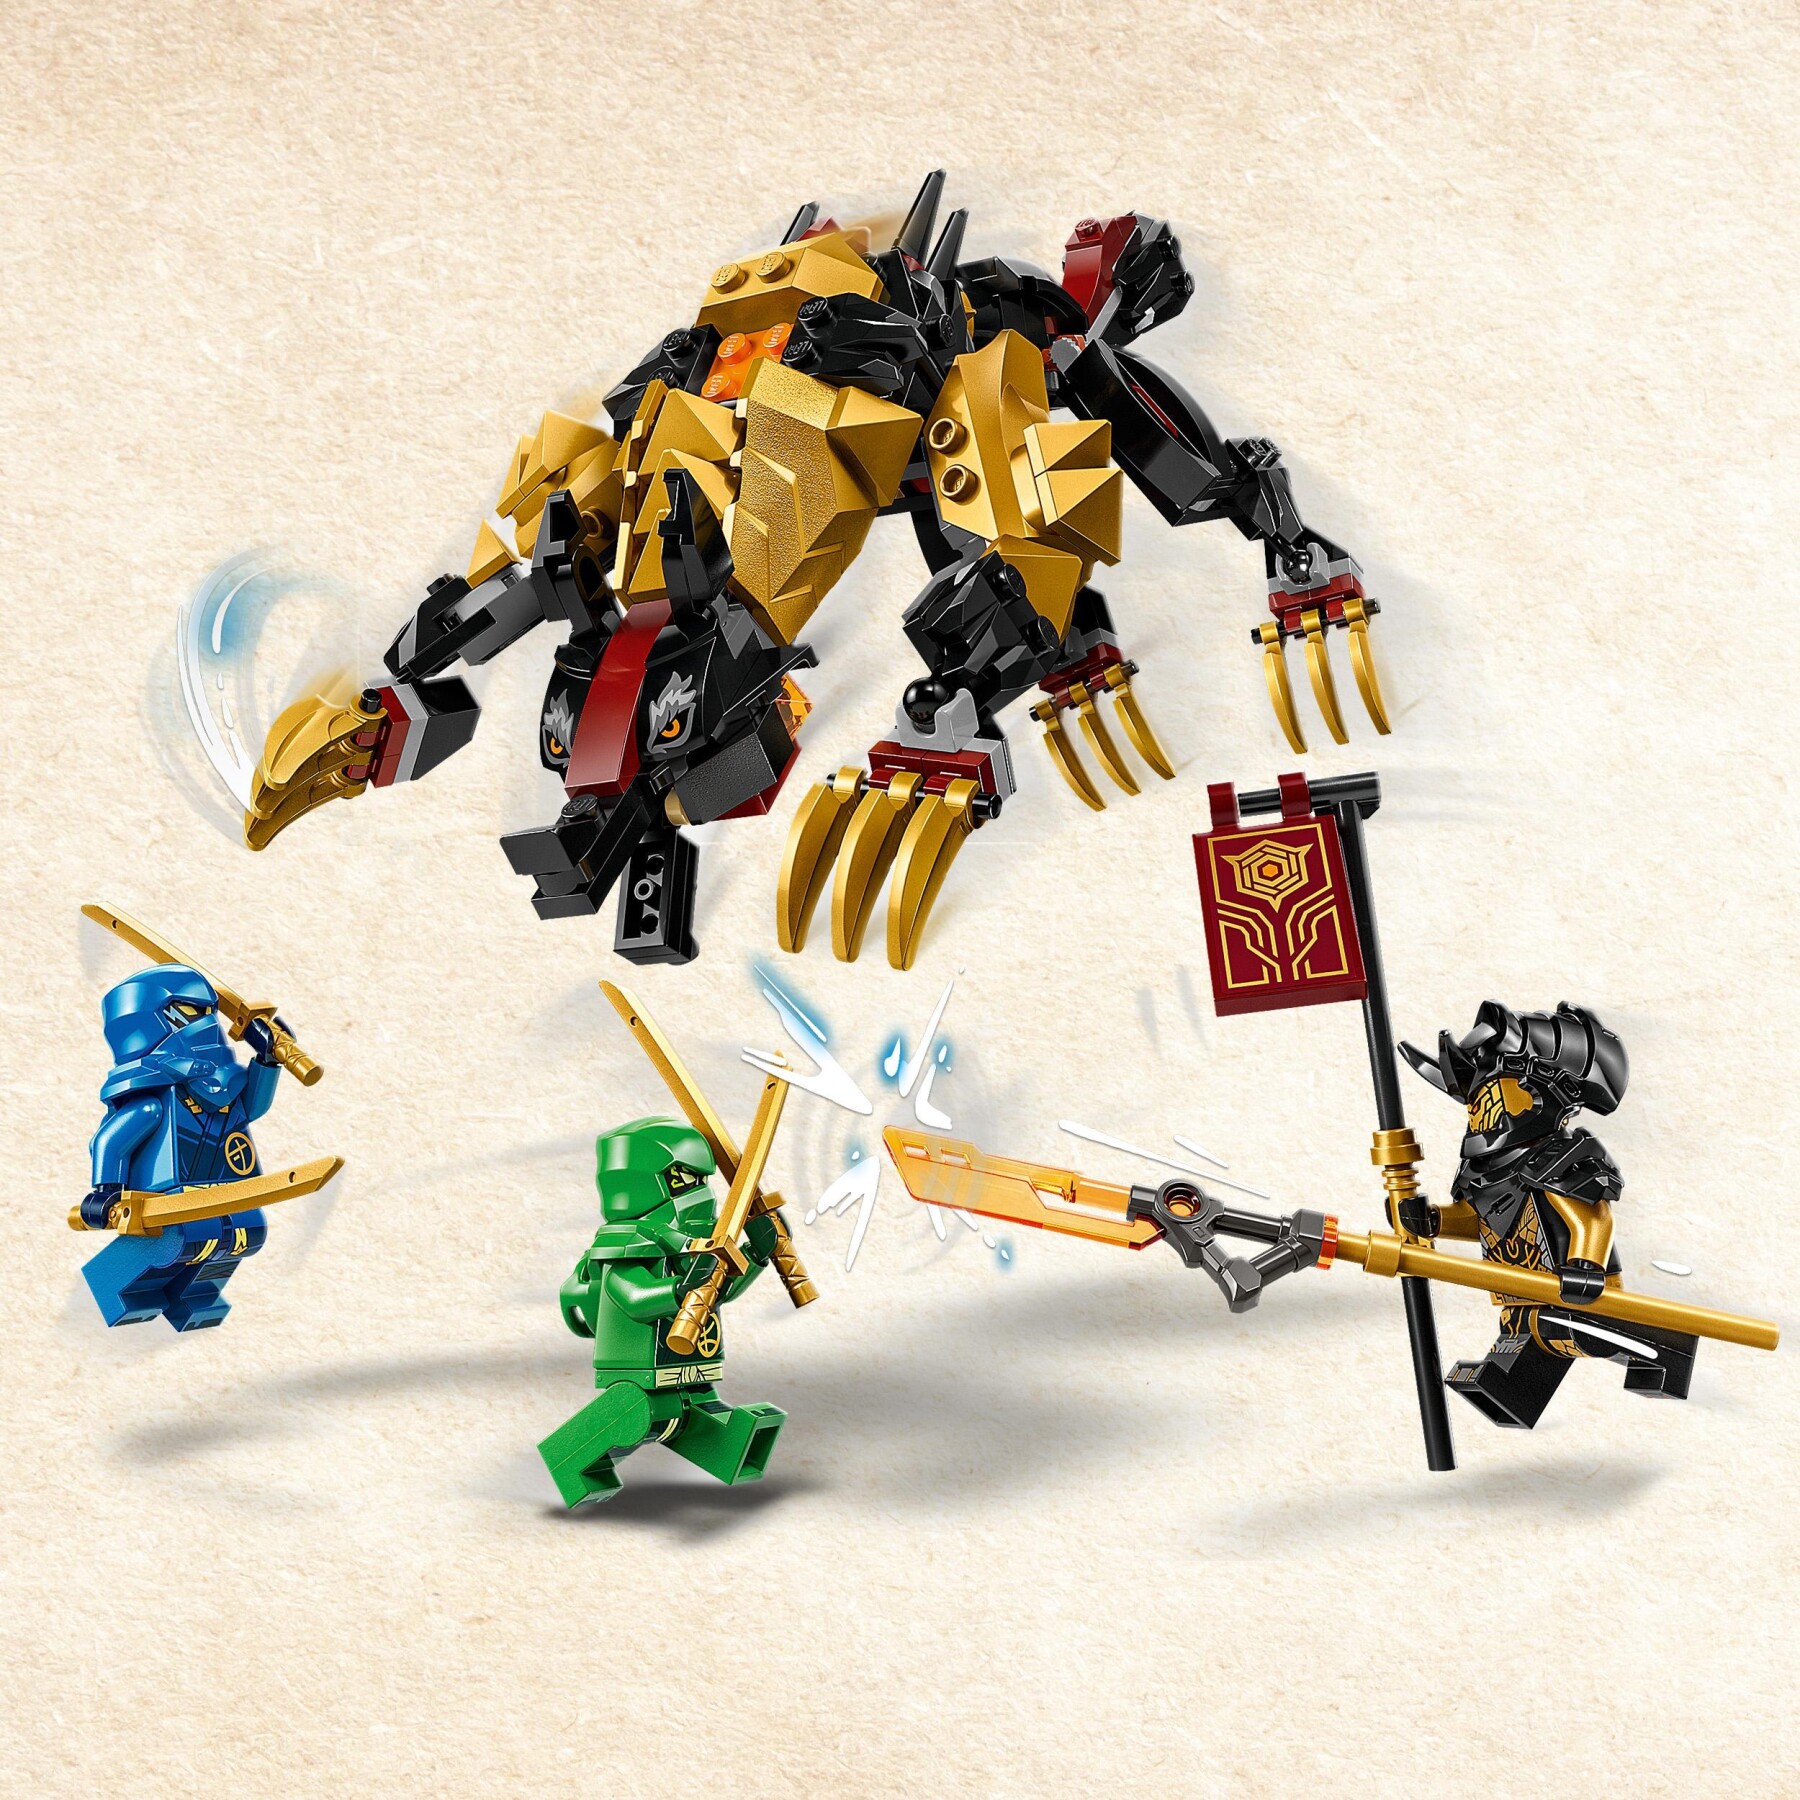 Lego ninjago 71790 cavaliere del drago cacciatore imperium, mostro giocattolo con 3 minifigure, giochi per bambini 6+ anni - LEGO NINJAGO